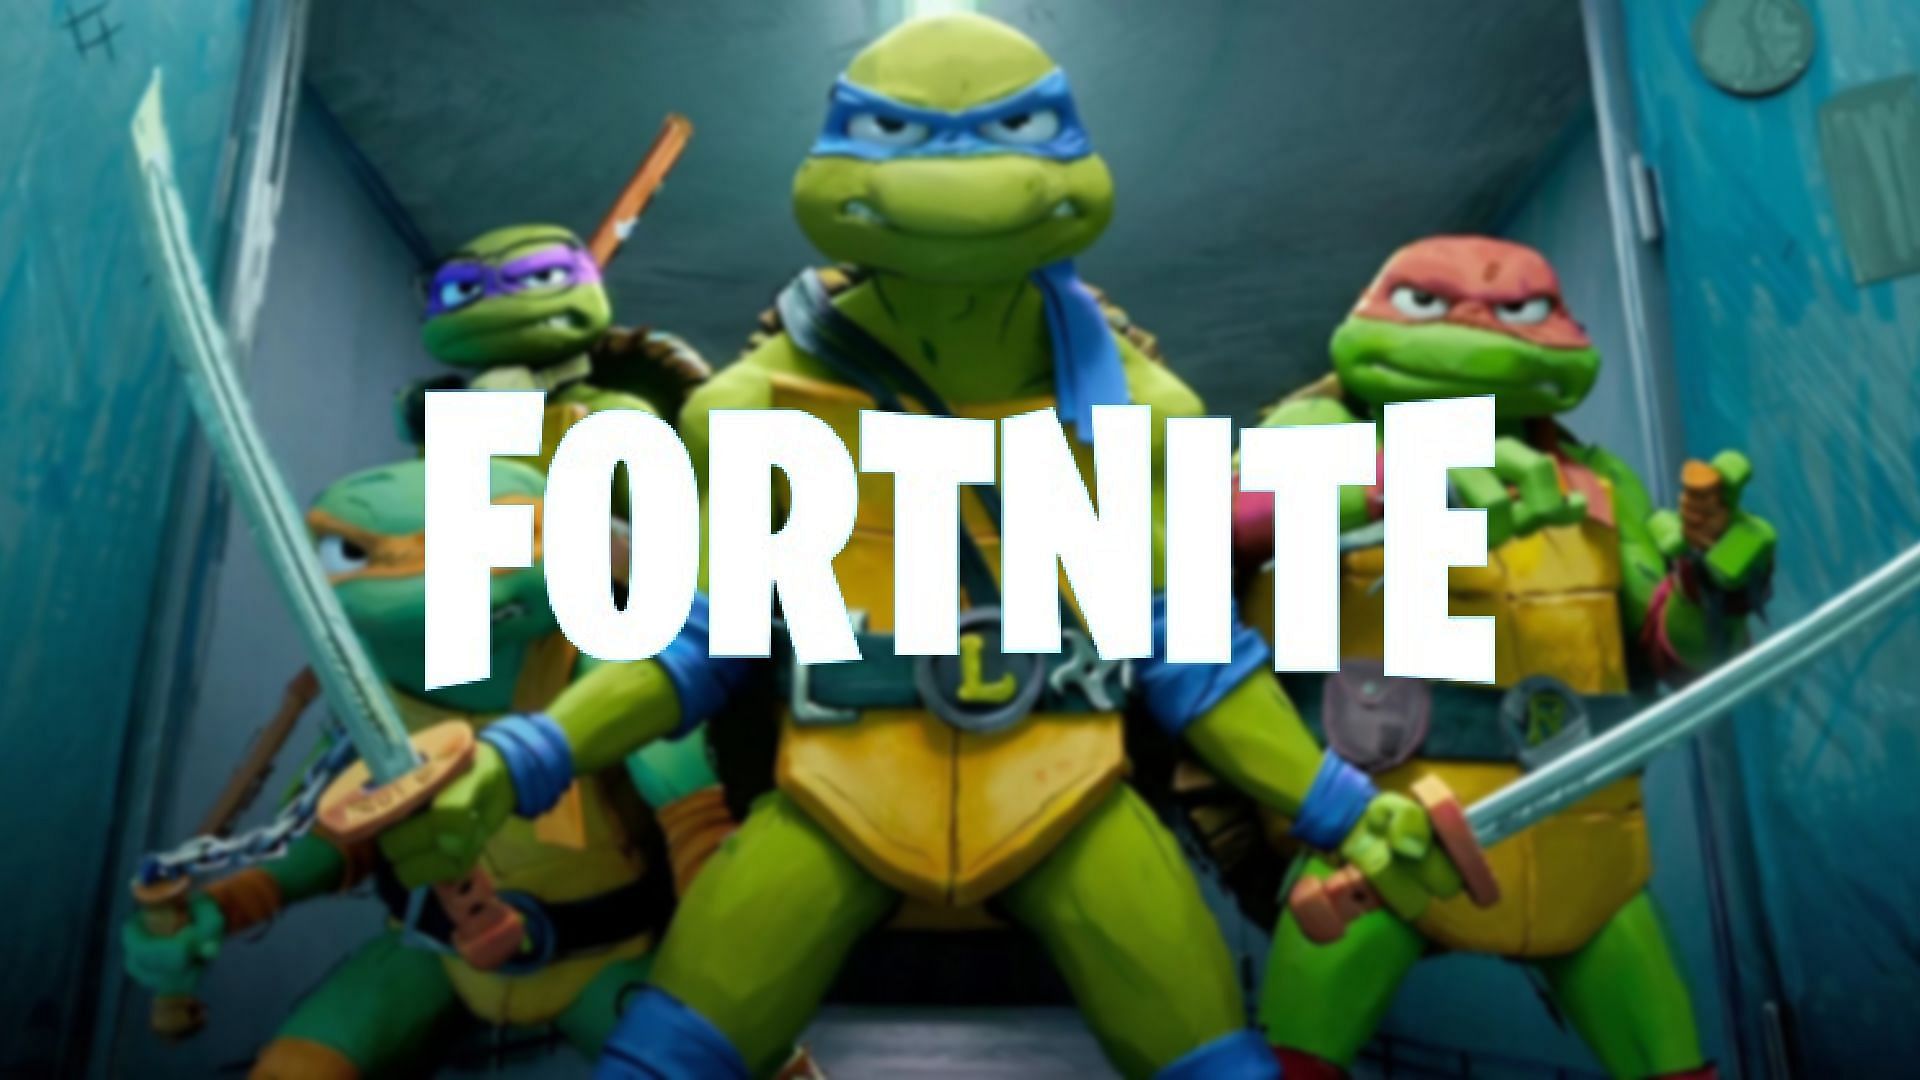 Fortnite x Teenage Mutant Ninja Turtles